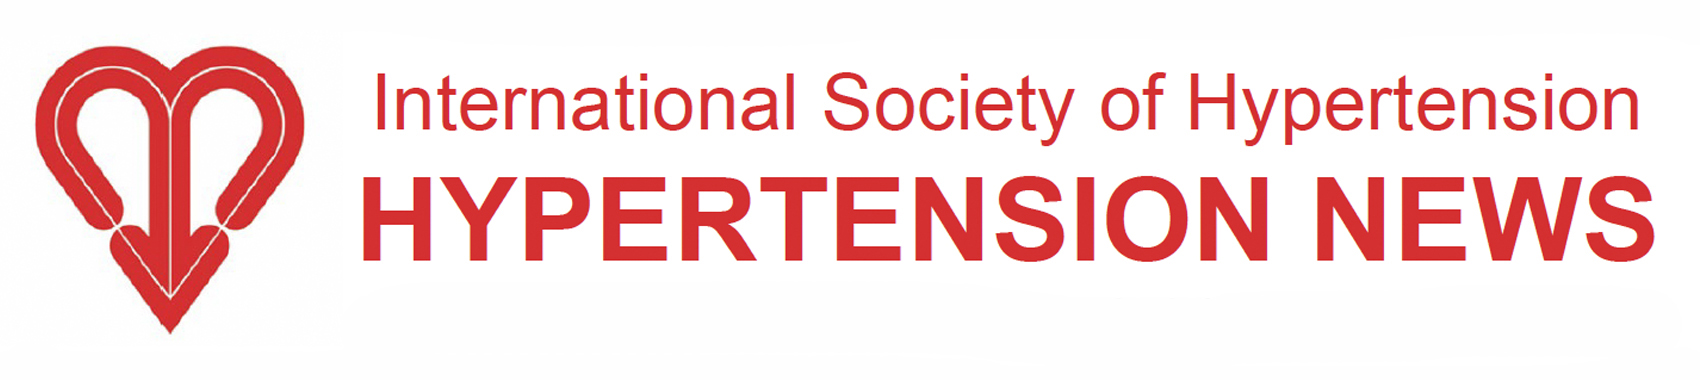 International Society of Hypertension Fellow (ISHF)